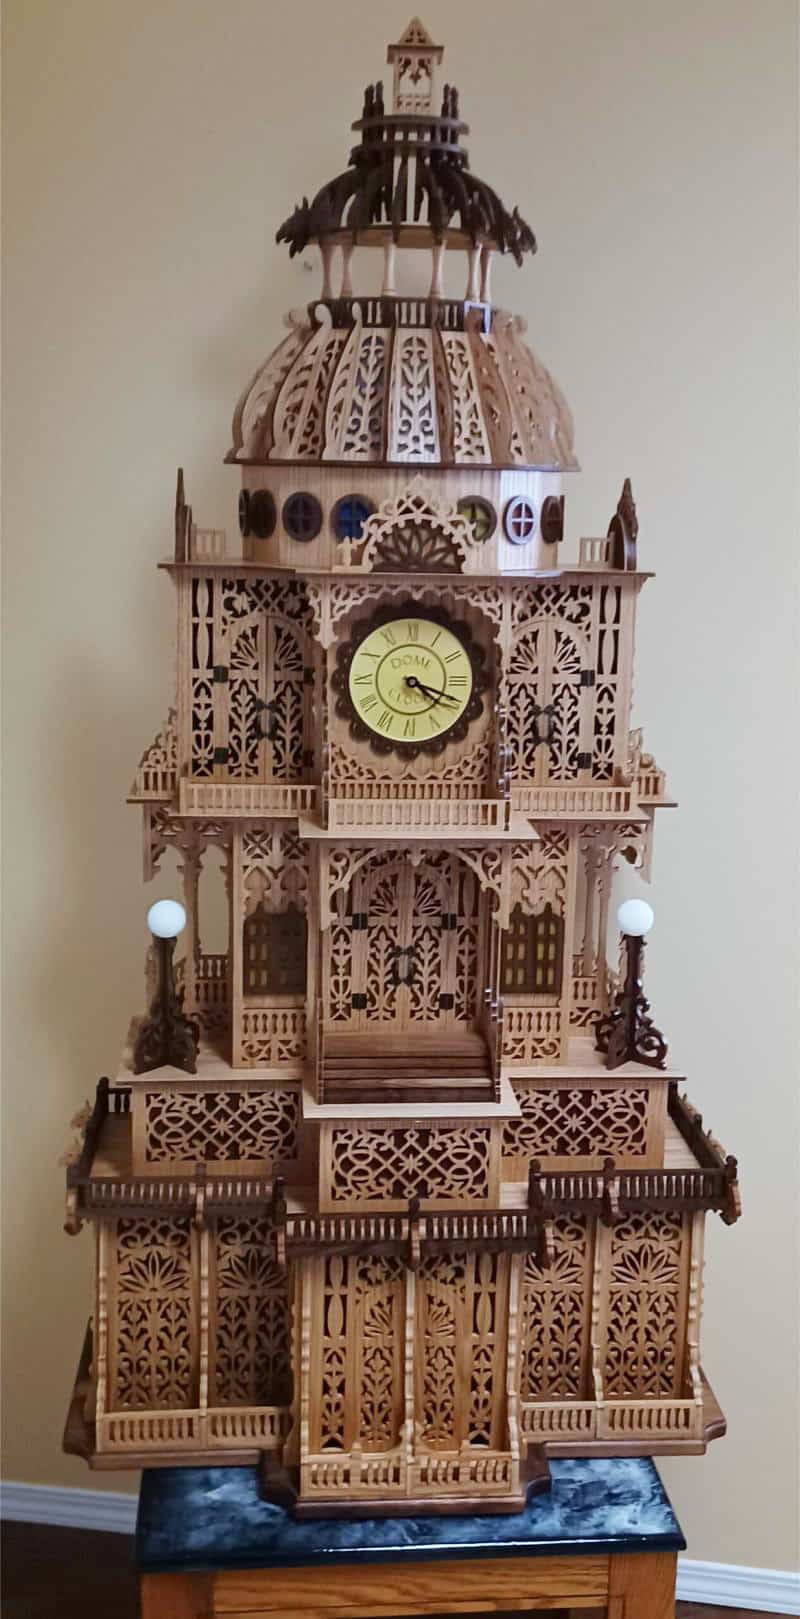 Dome clock